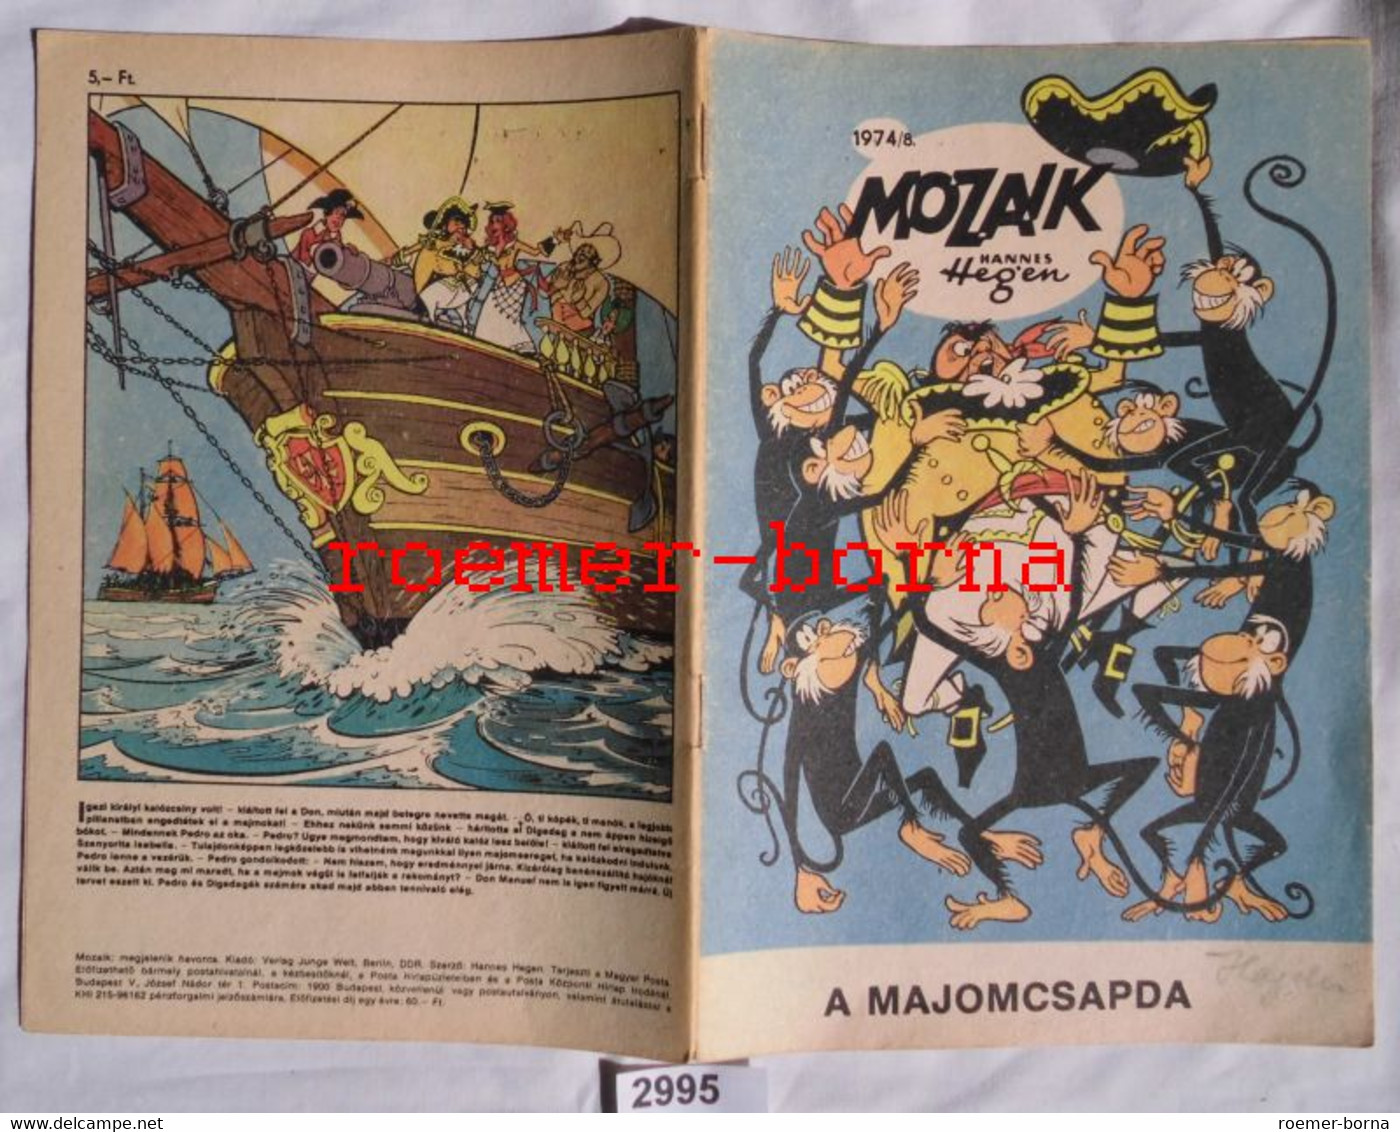 Mozaik Mosaik Von Hannes Hegen Seltene Export Ausgabe Für Ungarn Nr 1974/8 (entspricht Heft 202) - Digedags